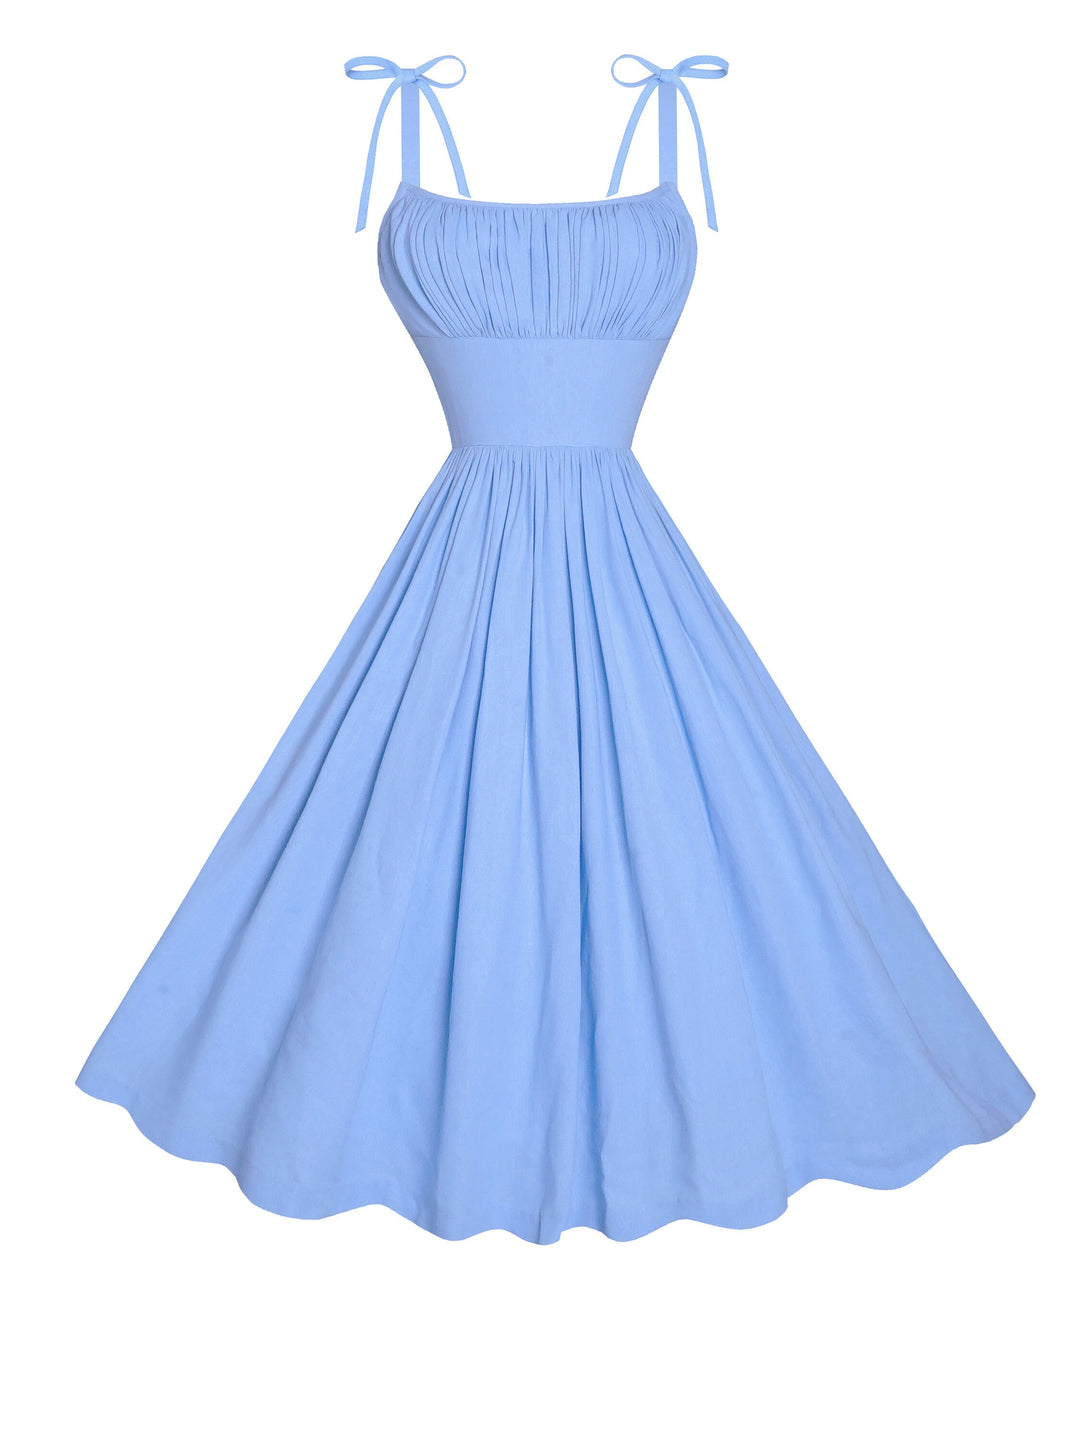 MTO - Kelly Dress in Powder Blue Linen